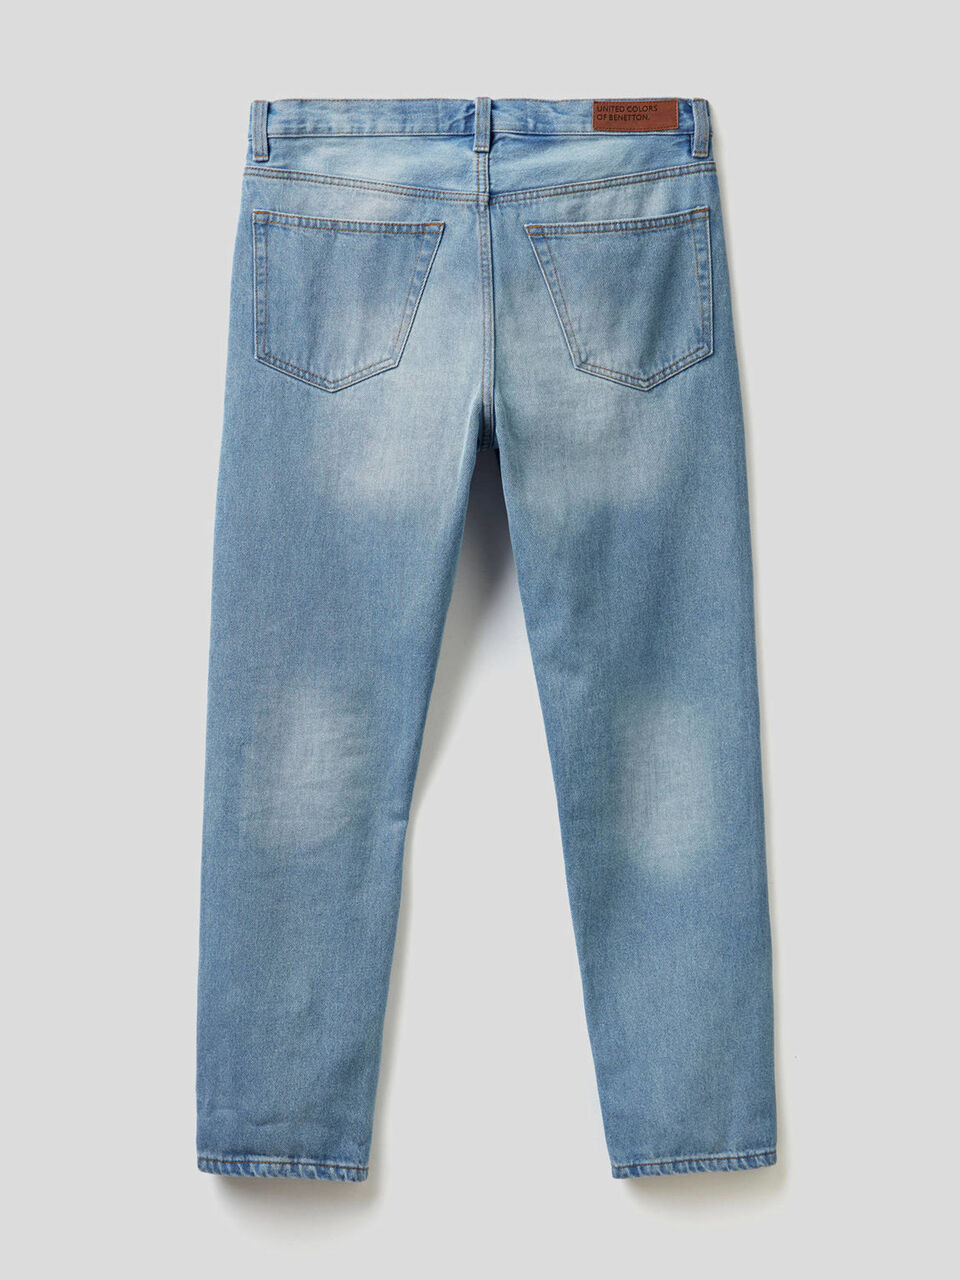 100% cotton five pocket jeans